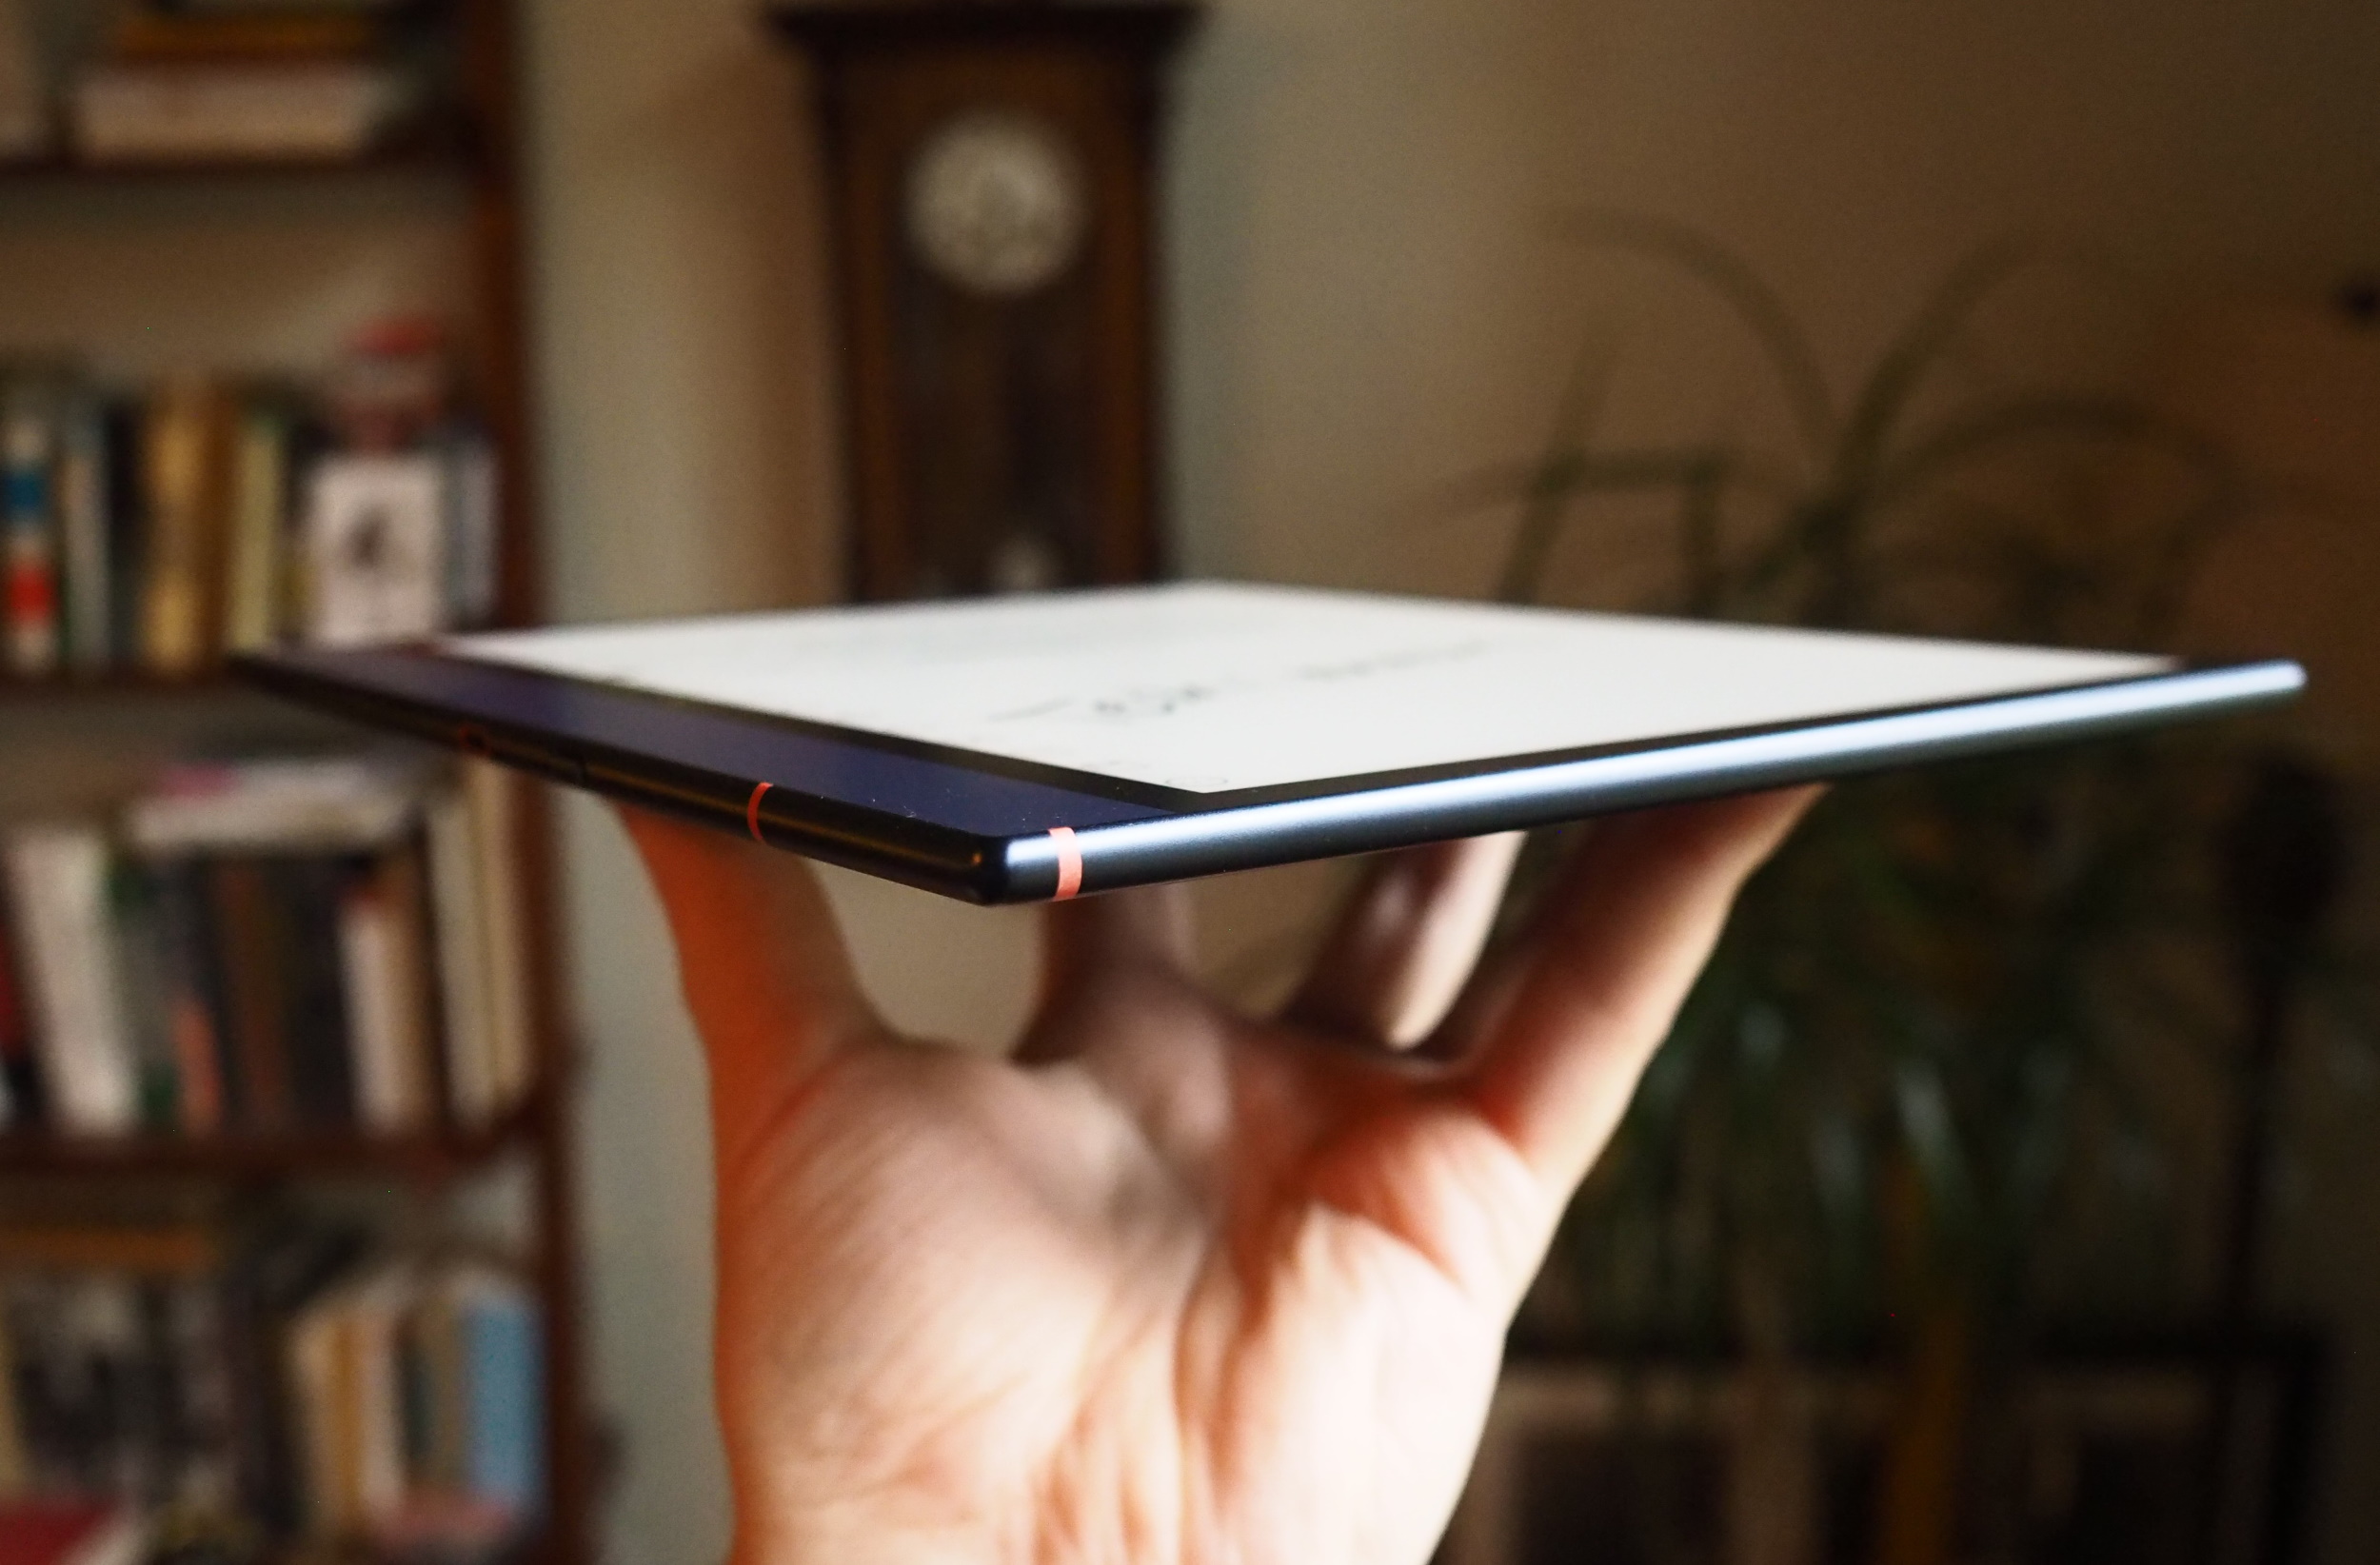 Vista lateral de una tableta que muestra su perfil delgado y acabado metálico.